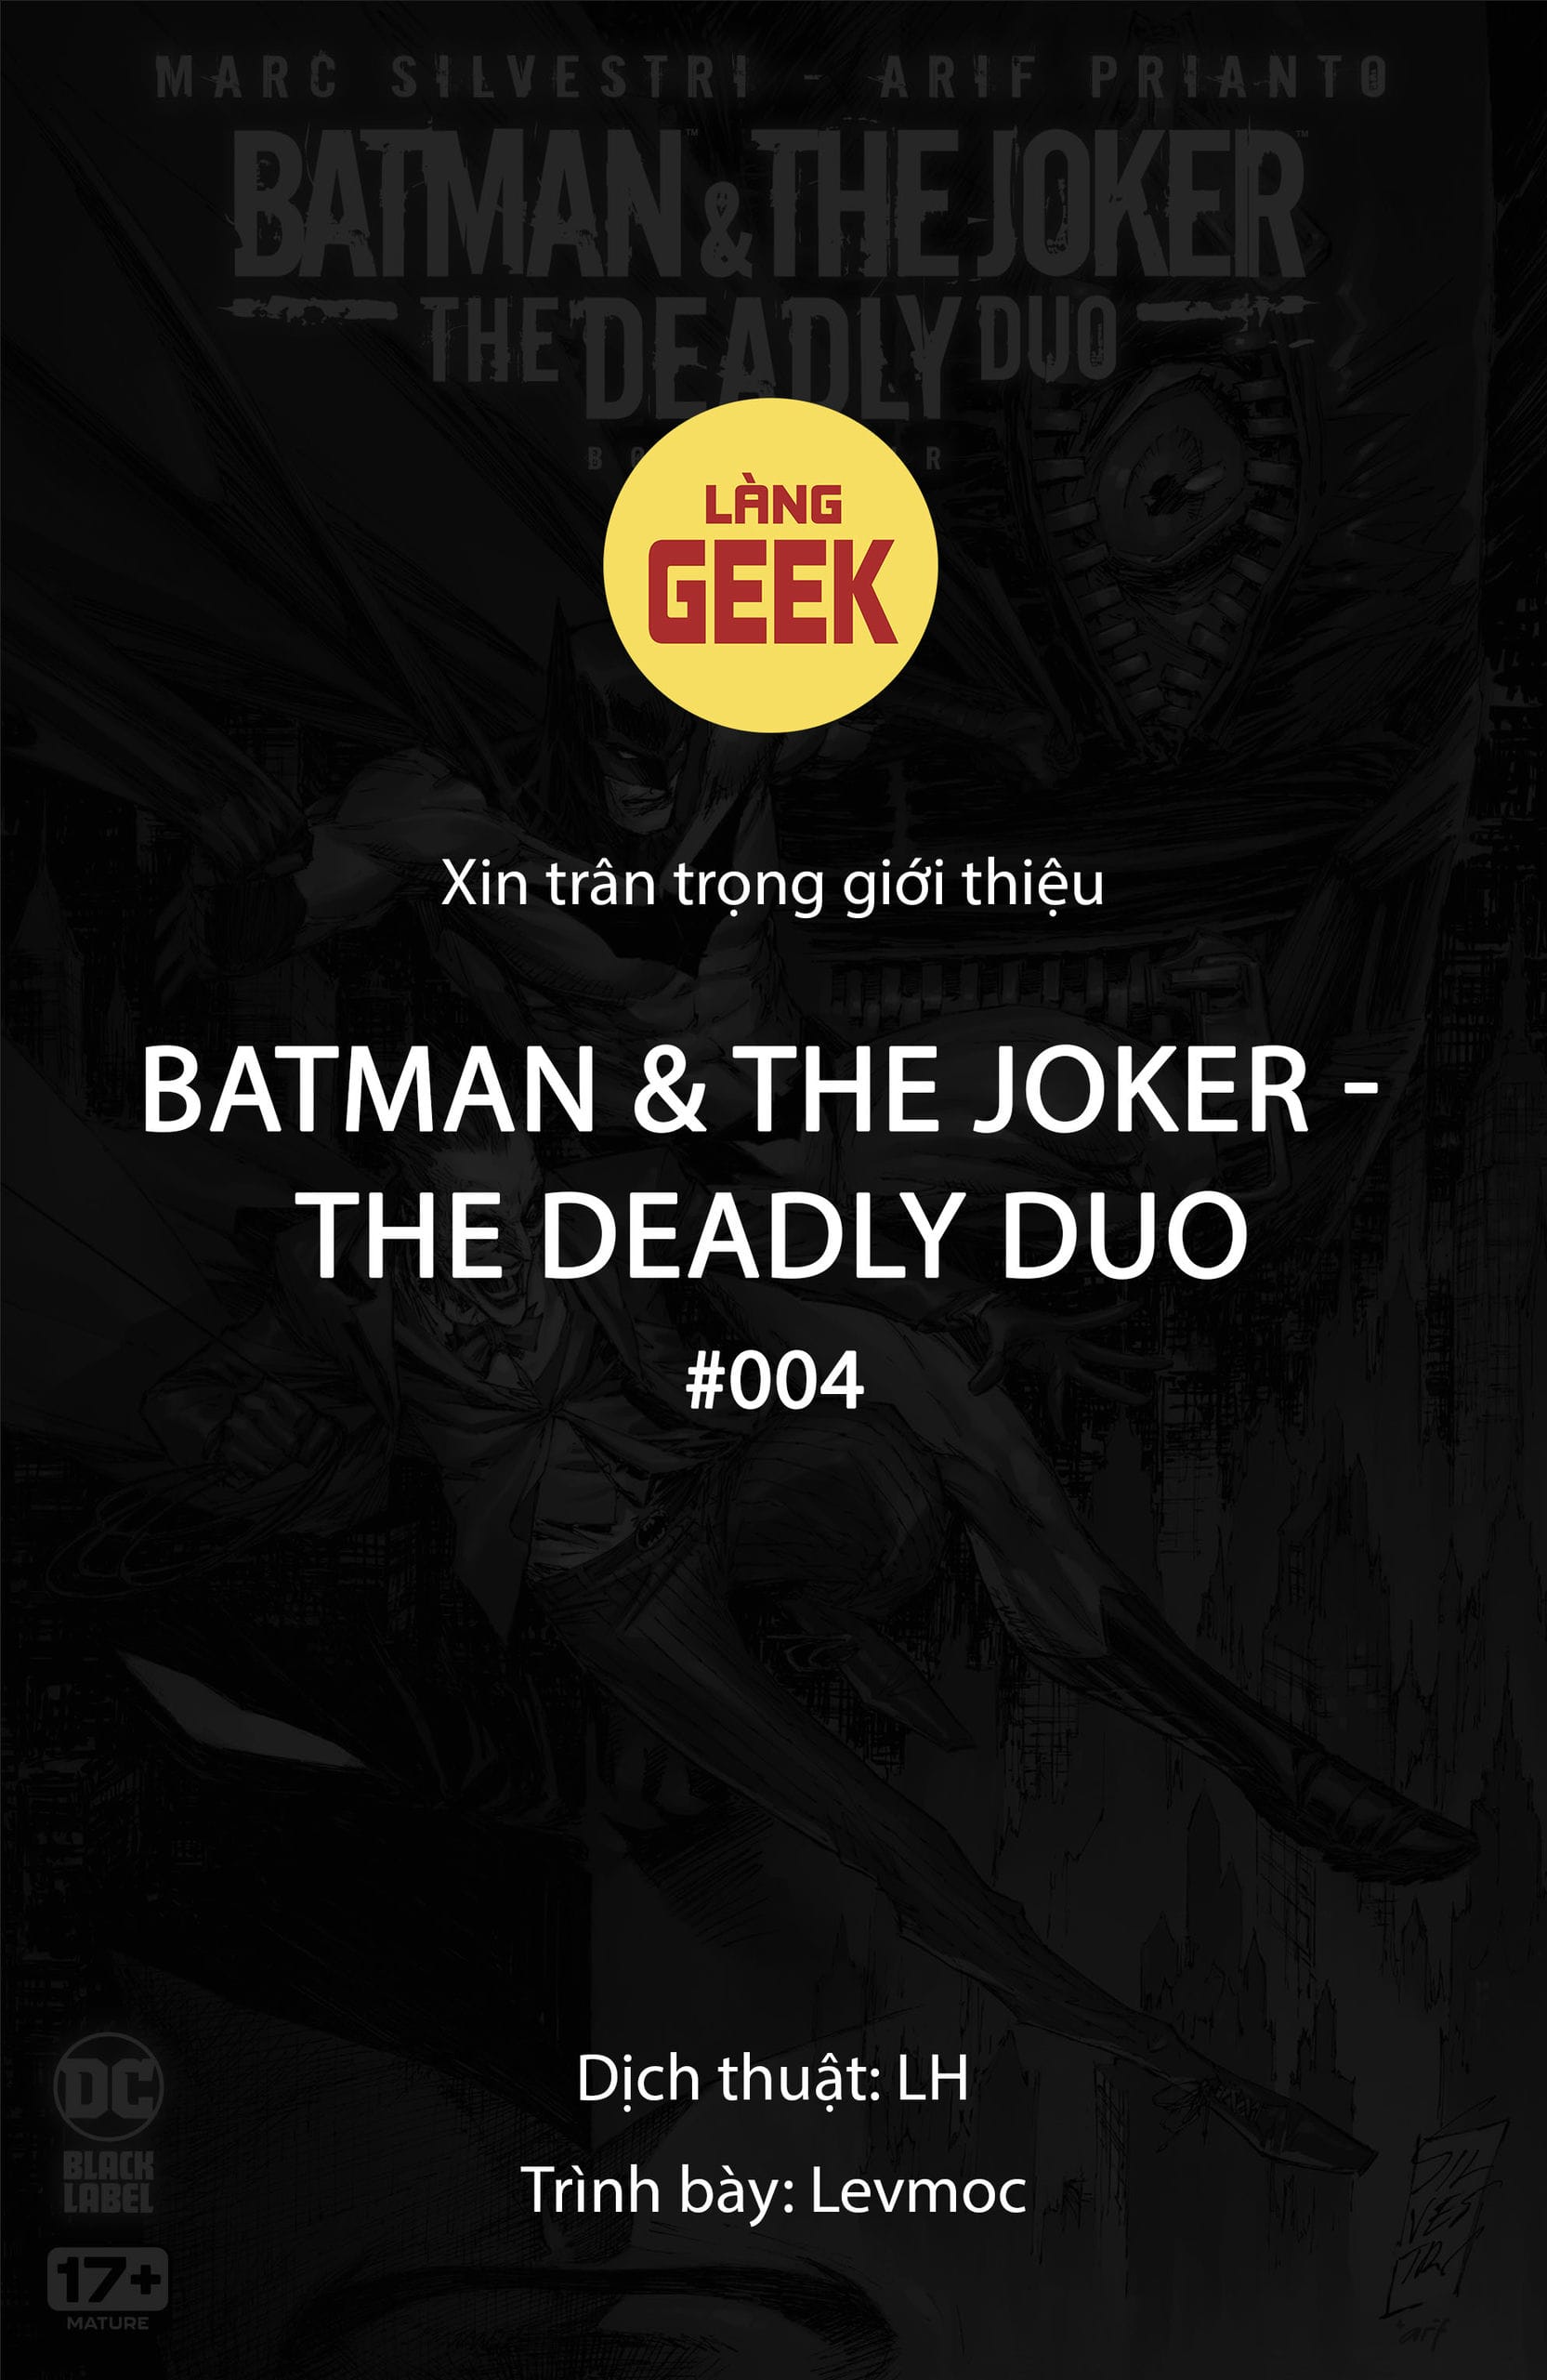 https://langgeek.net/wp-content/webpc-passthru.php?src=https://langgeek.net/wp-content/uploads/2023/02/Batman-The-Joker-The-Deadly-Duo-2022-004-001.jpg&nocache=1